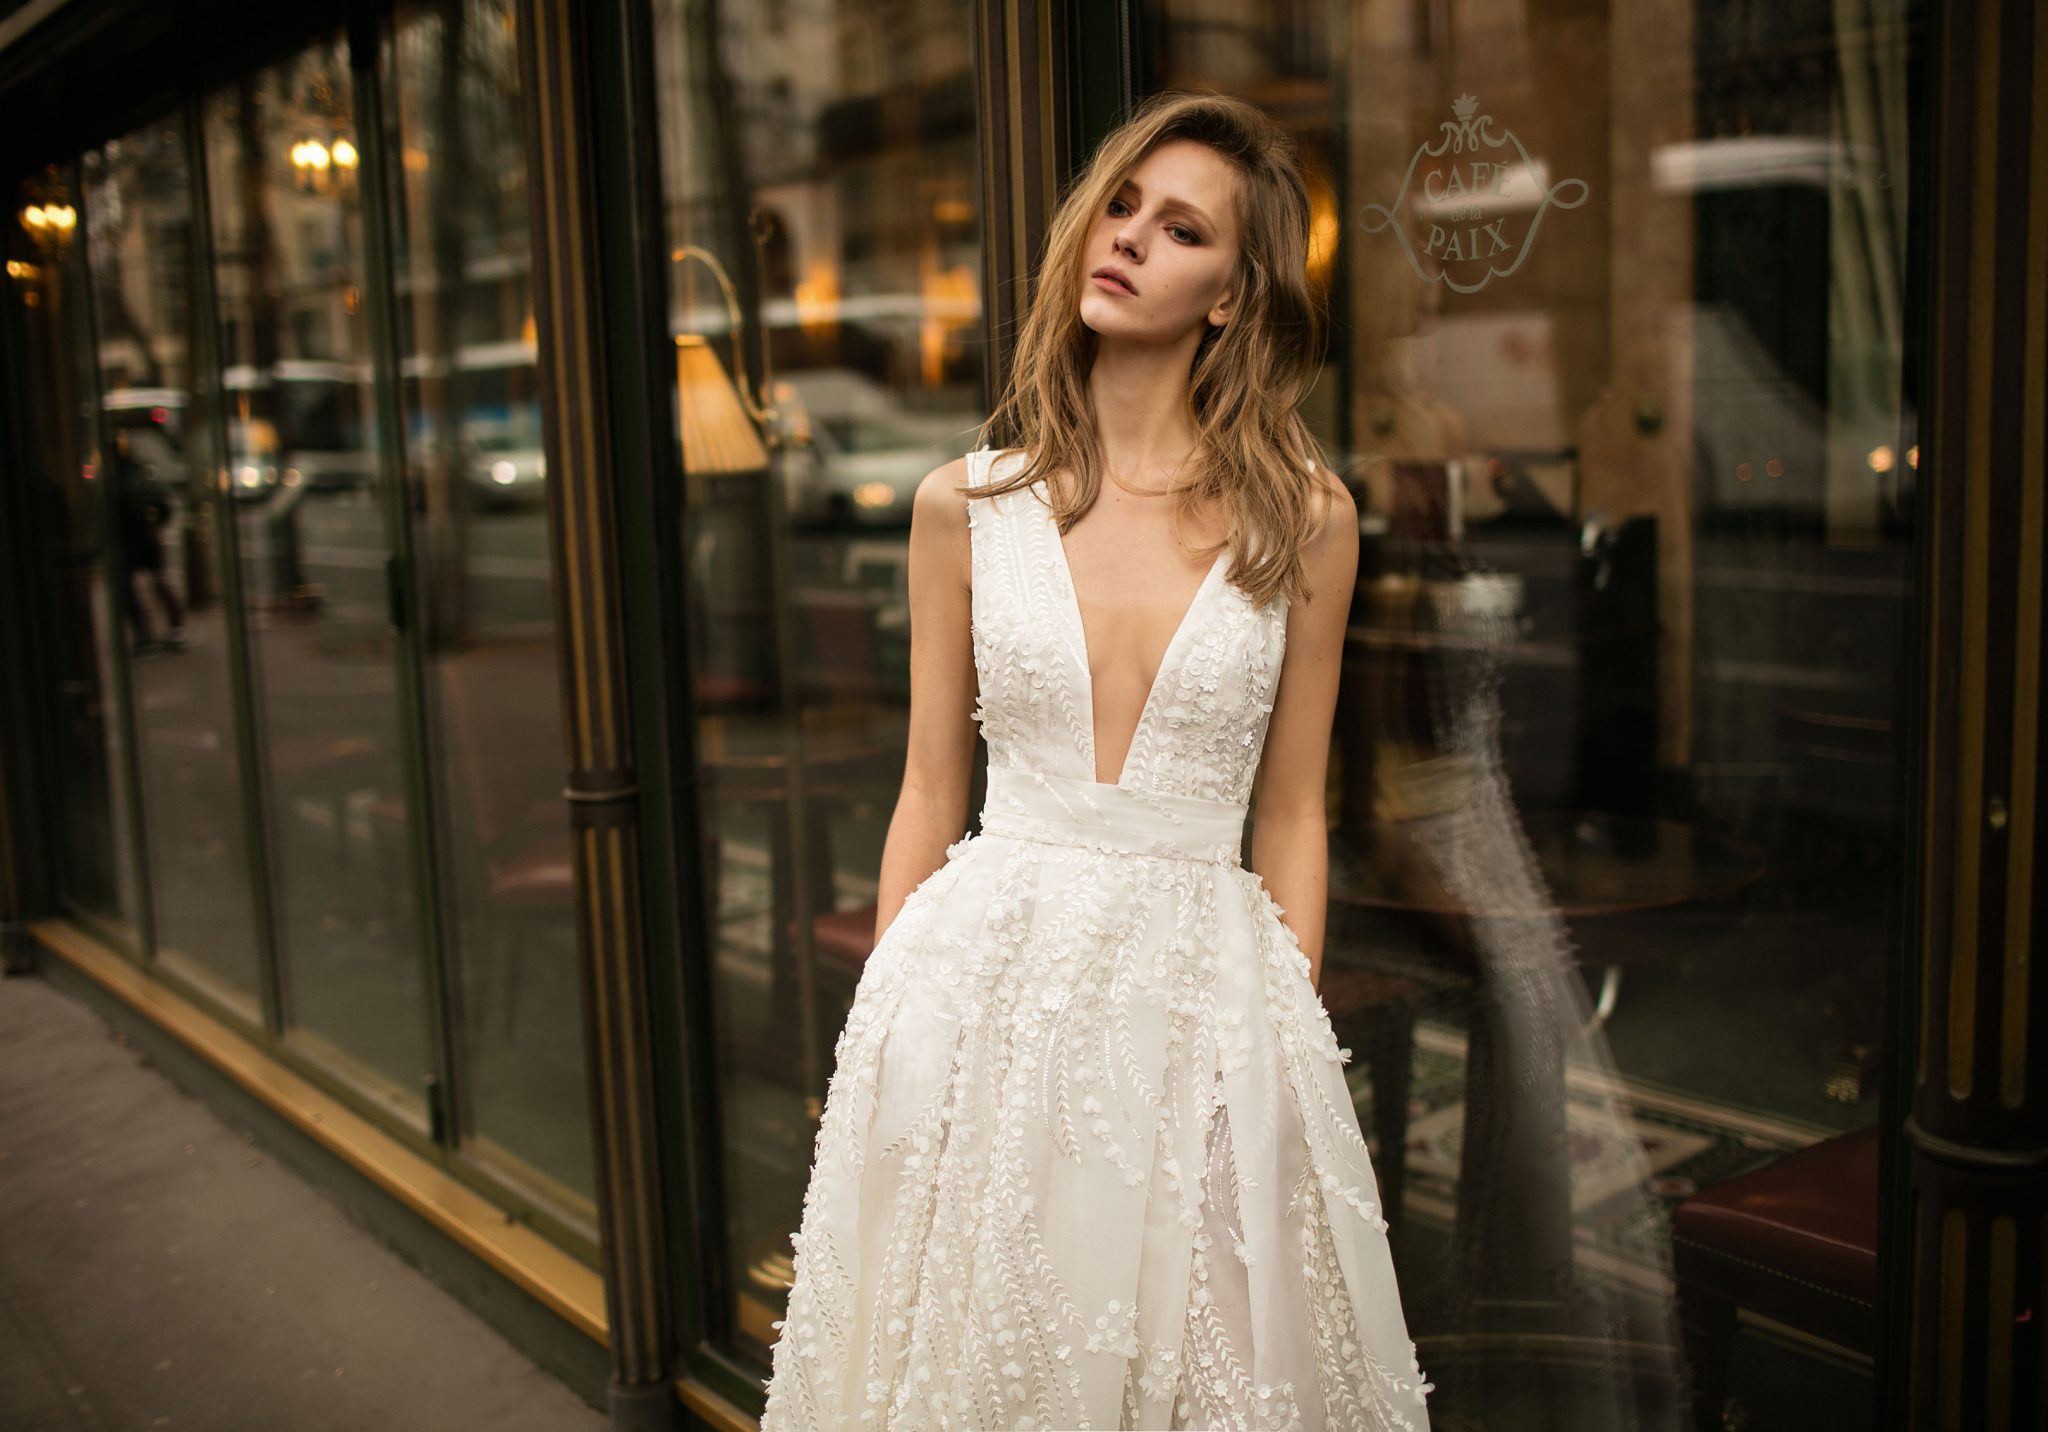 Eisen-Stein - Wedding Dress Design - 1